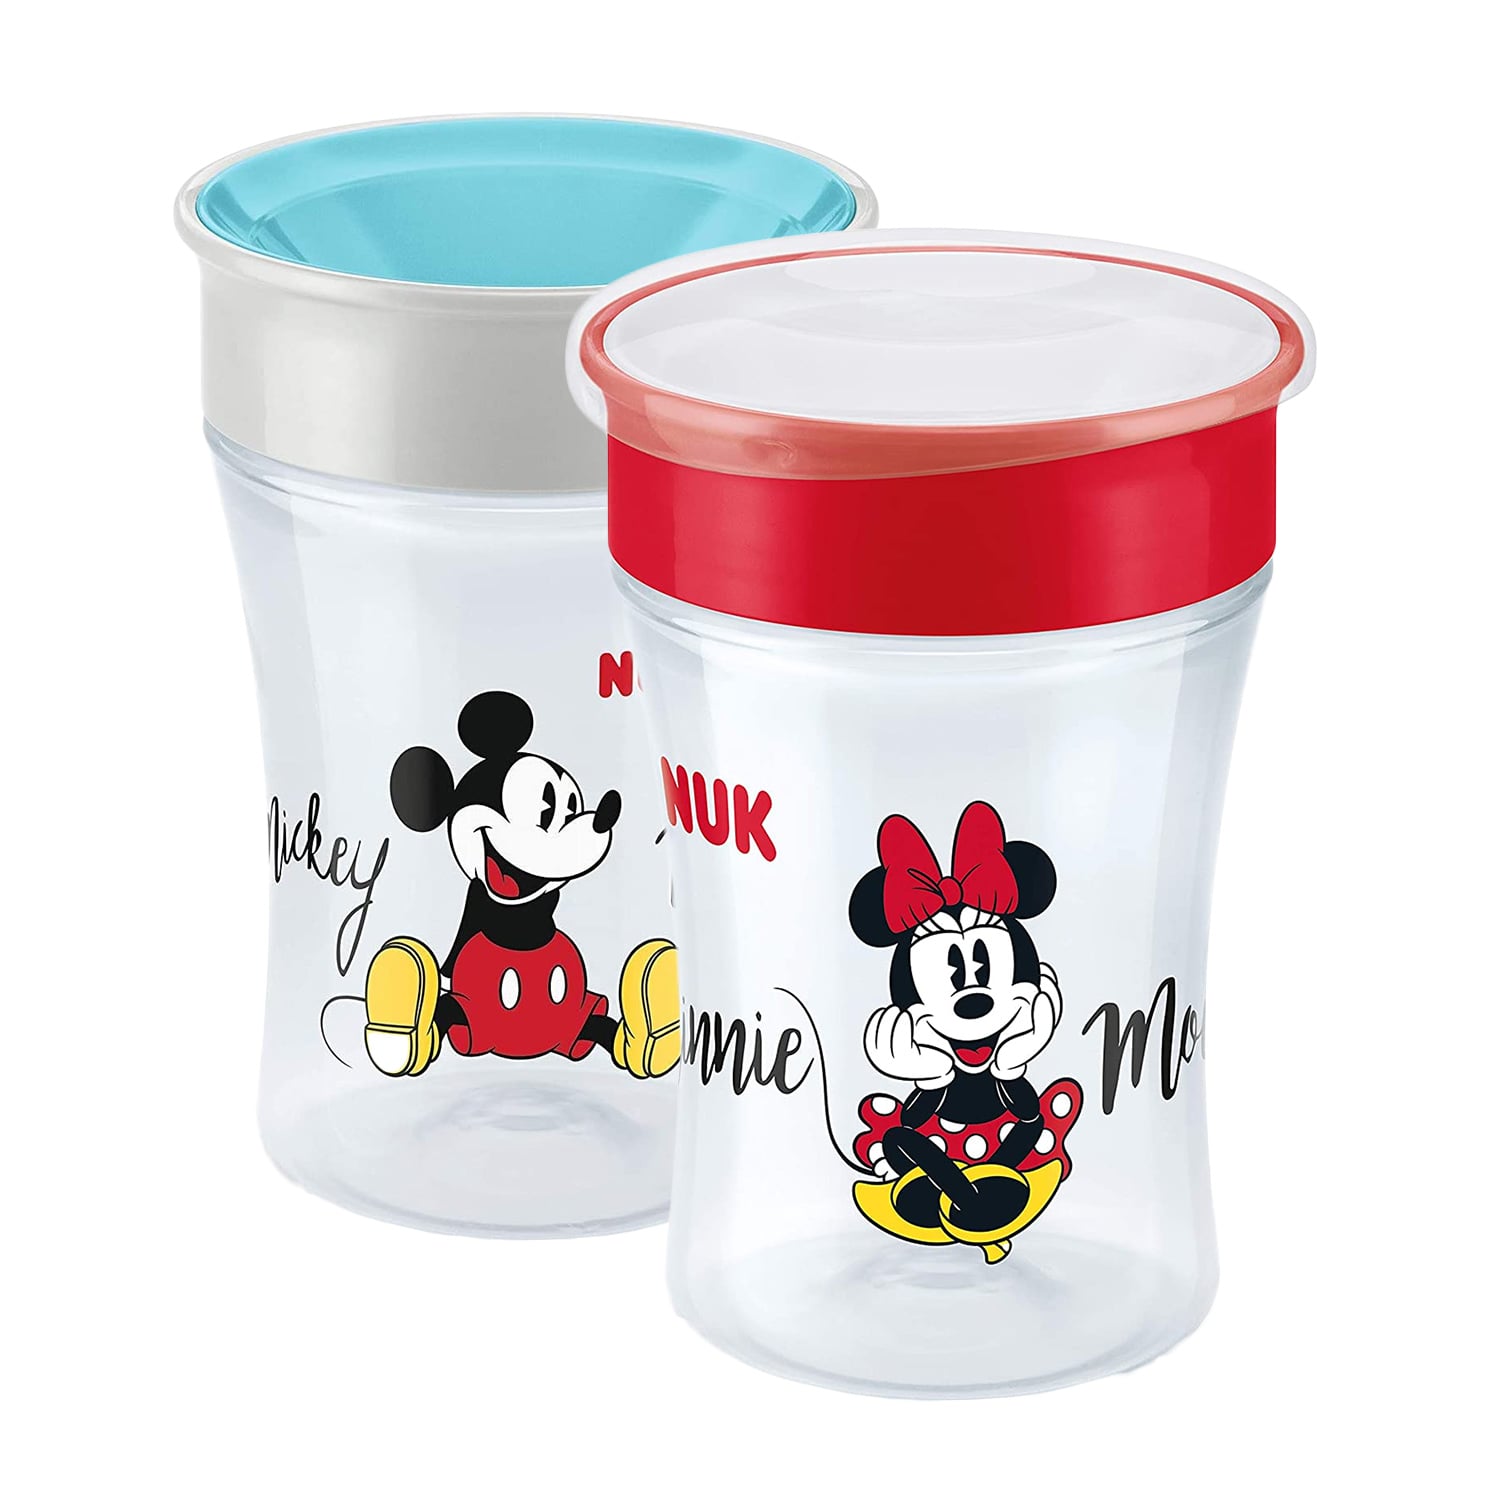 NUK Magic Cup Disney 230 ML - Hazari Impex - Distributor Of Consumer Goods